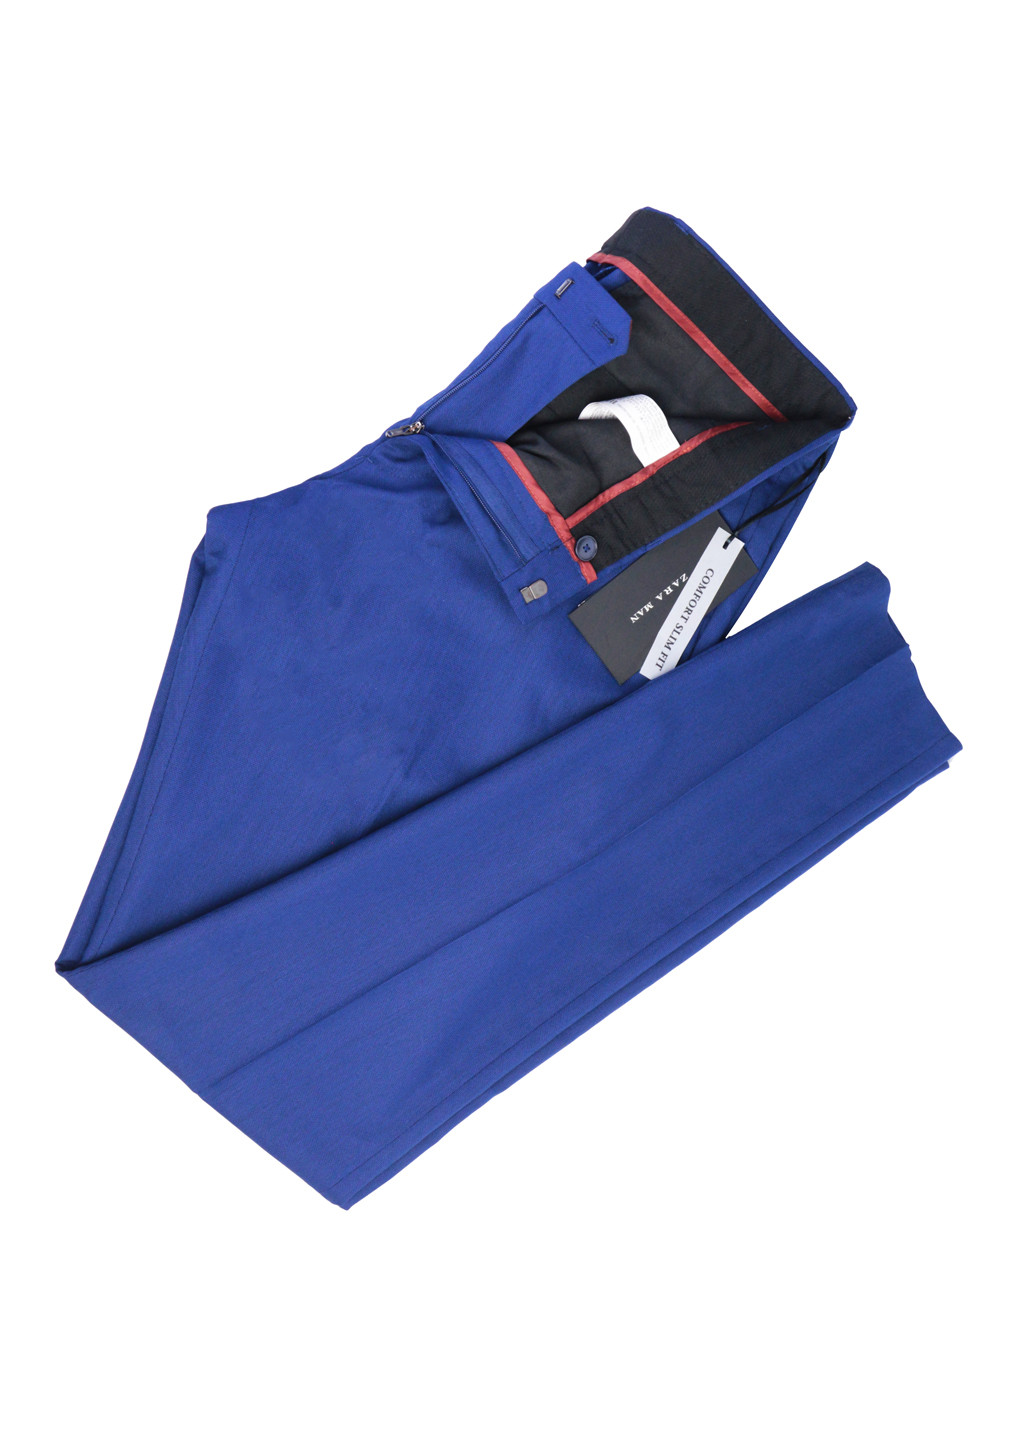 Синие классические демисезонные брюки Zara